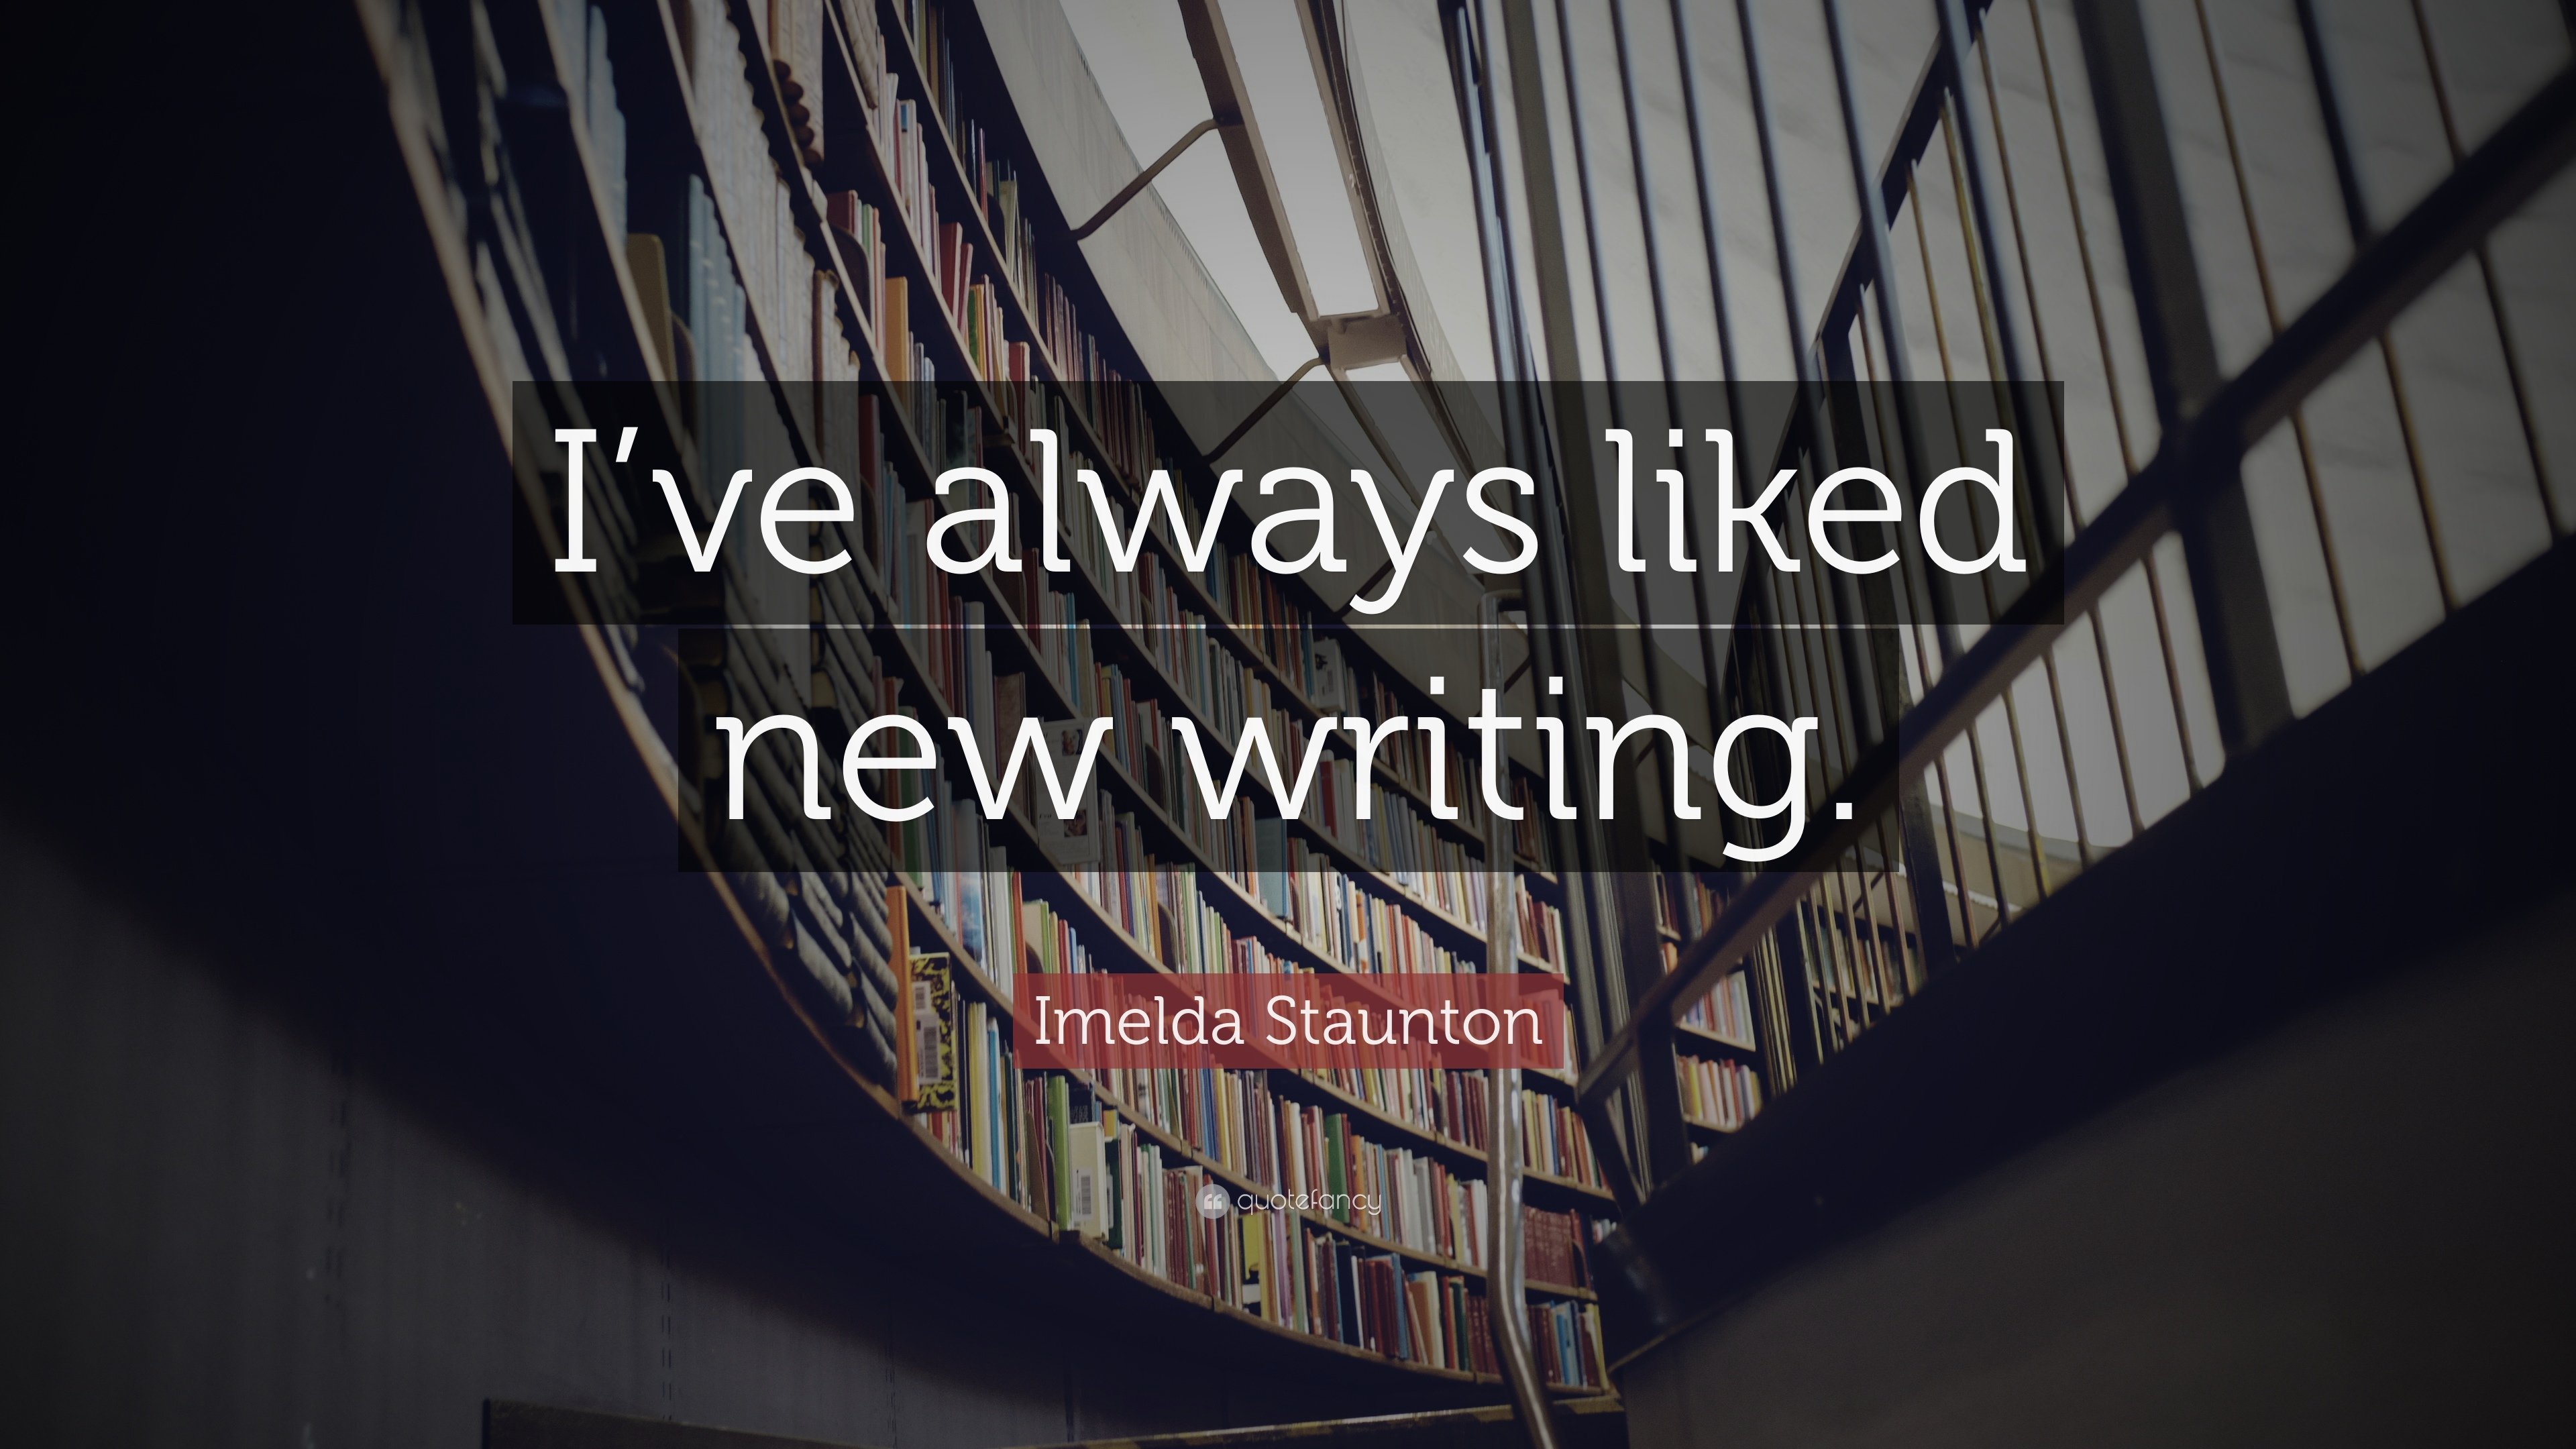 Imelda Staunton Quote: “I've always liked new writing.” 7